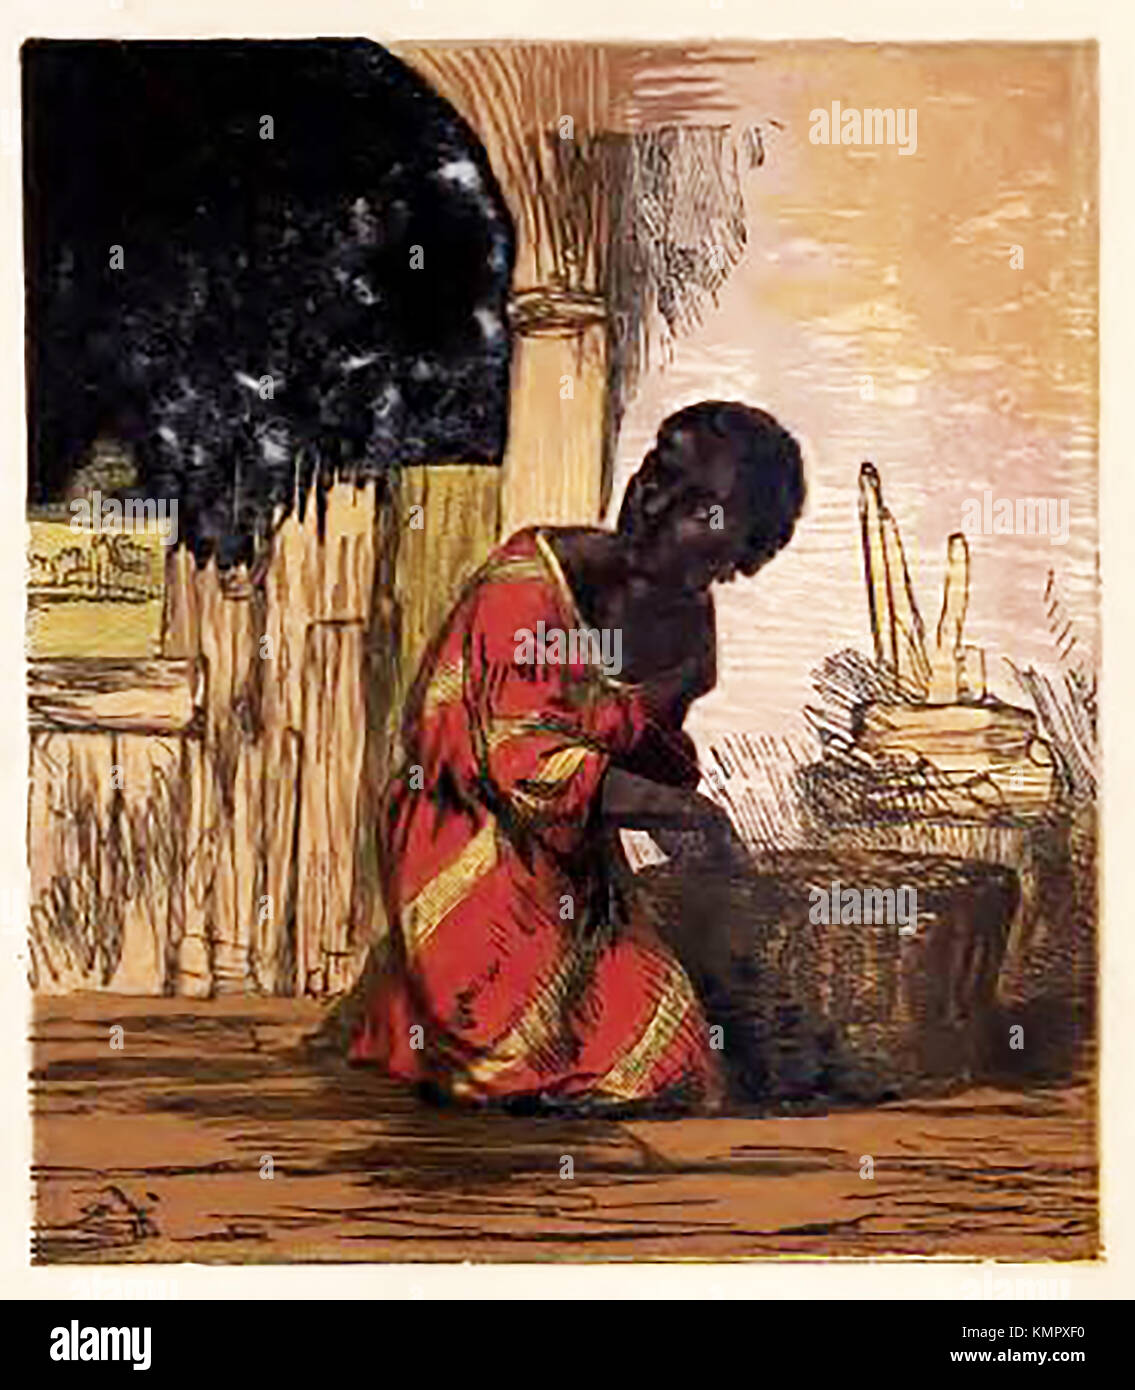 Illustrazione di un libro colorato di occupazioni e passatempi di bambini vittoriani.: - Uno schiavo vittoriano negli Stati Uniti Foto Stock